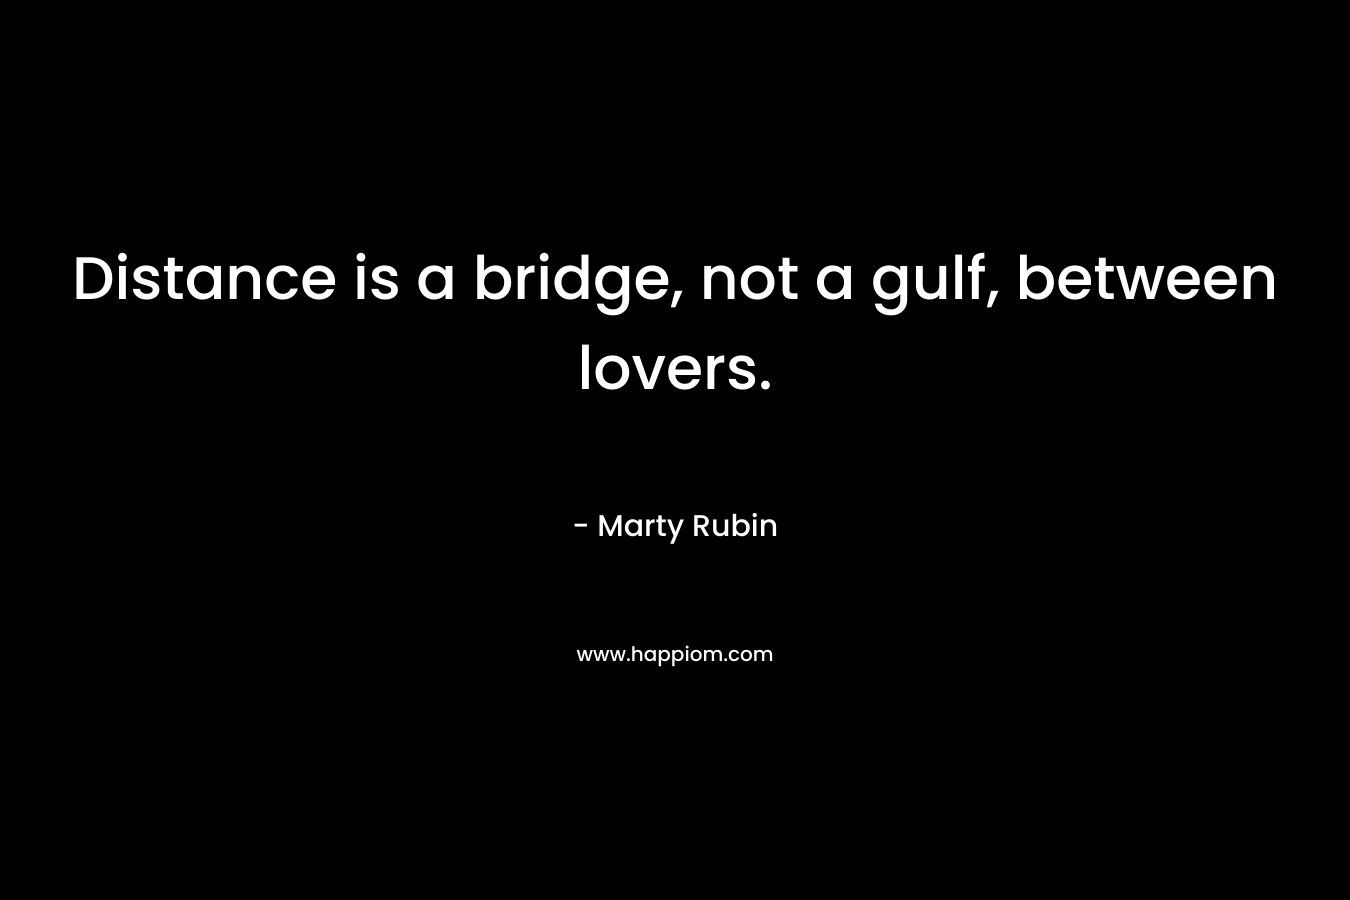 Distance is a bridge, not a gulf, between lovers.